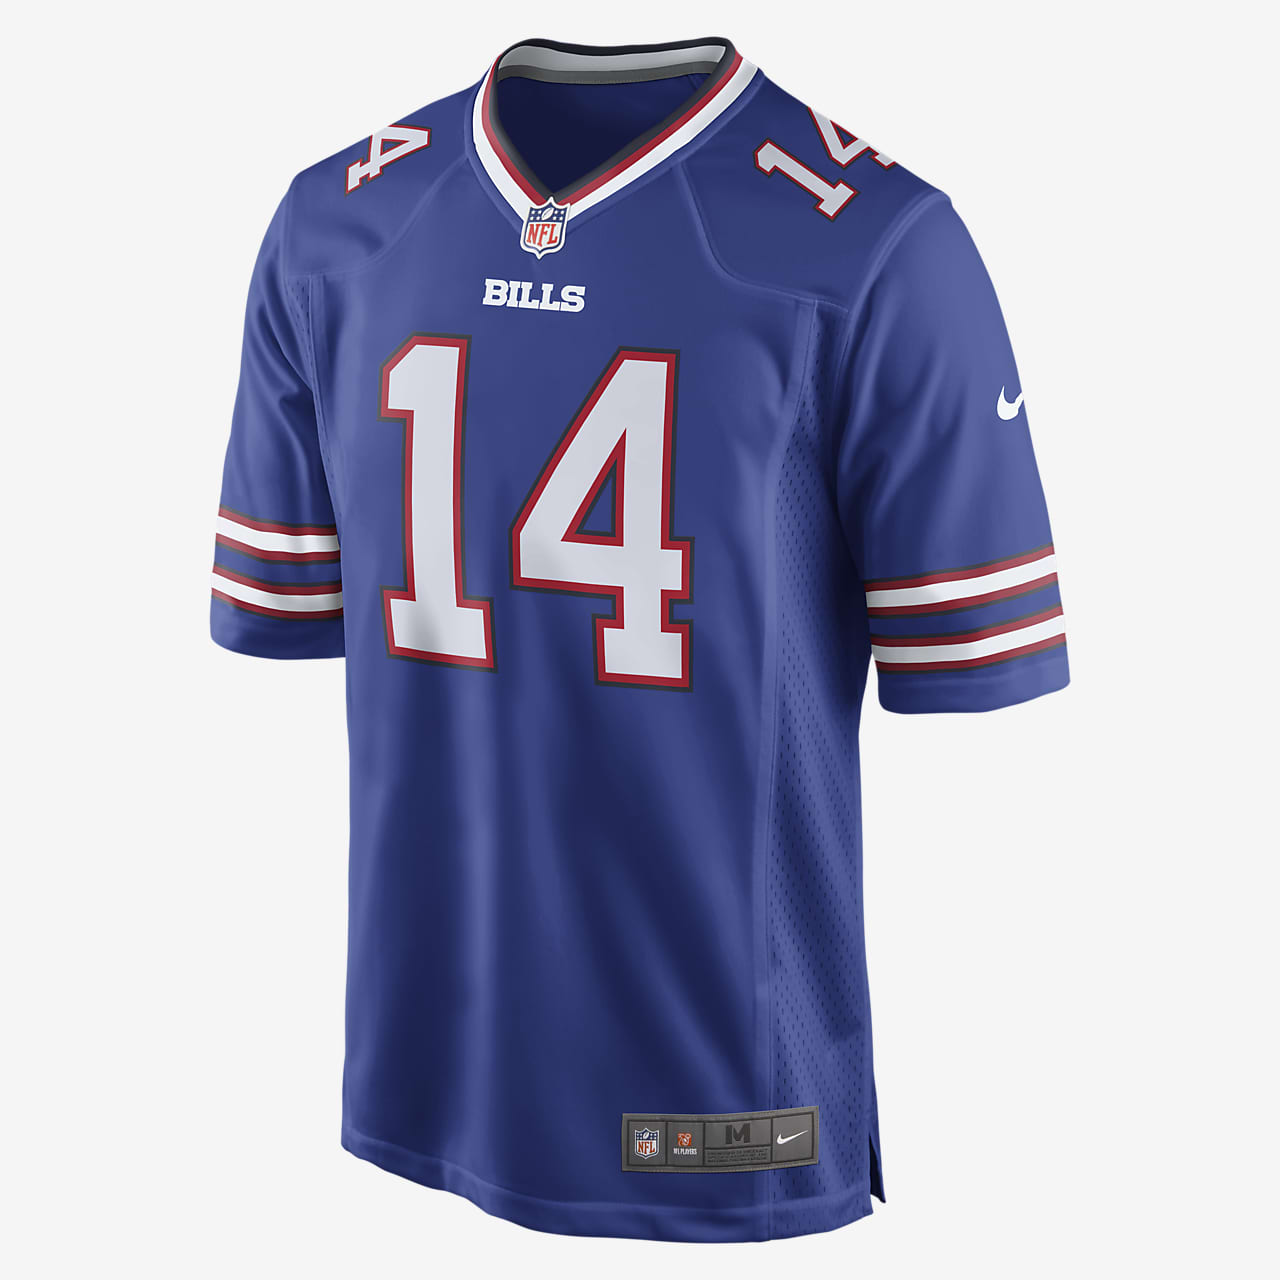 NFL Buffalo Bills Game Jersey (Sammy Watkins) - fodboldtrøje til mænd